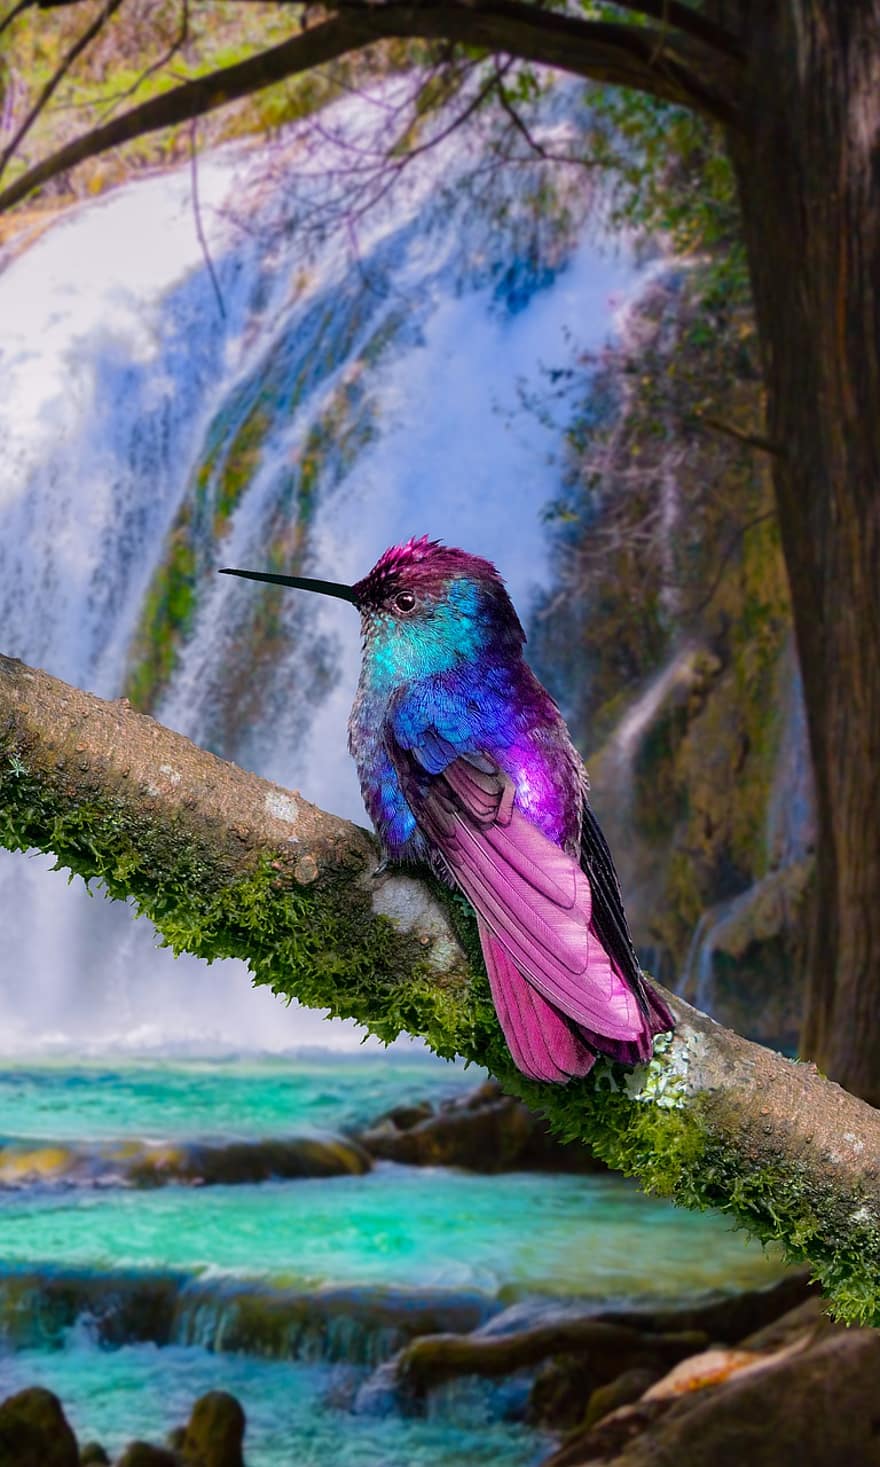 burung, burung kolibri, air terjun, aliran, sungai, hewan, berwarna merah muda, biru, hutan, wallpaper ponsel